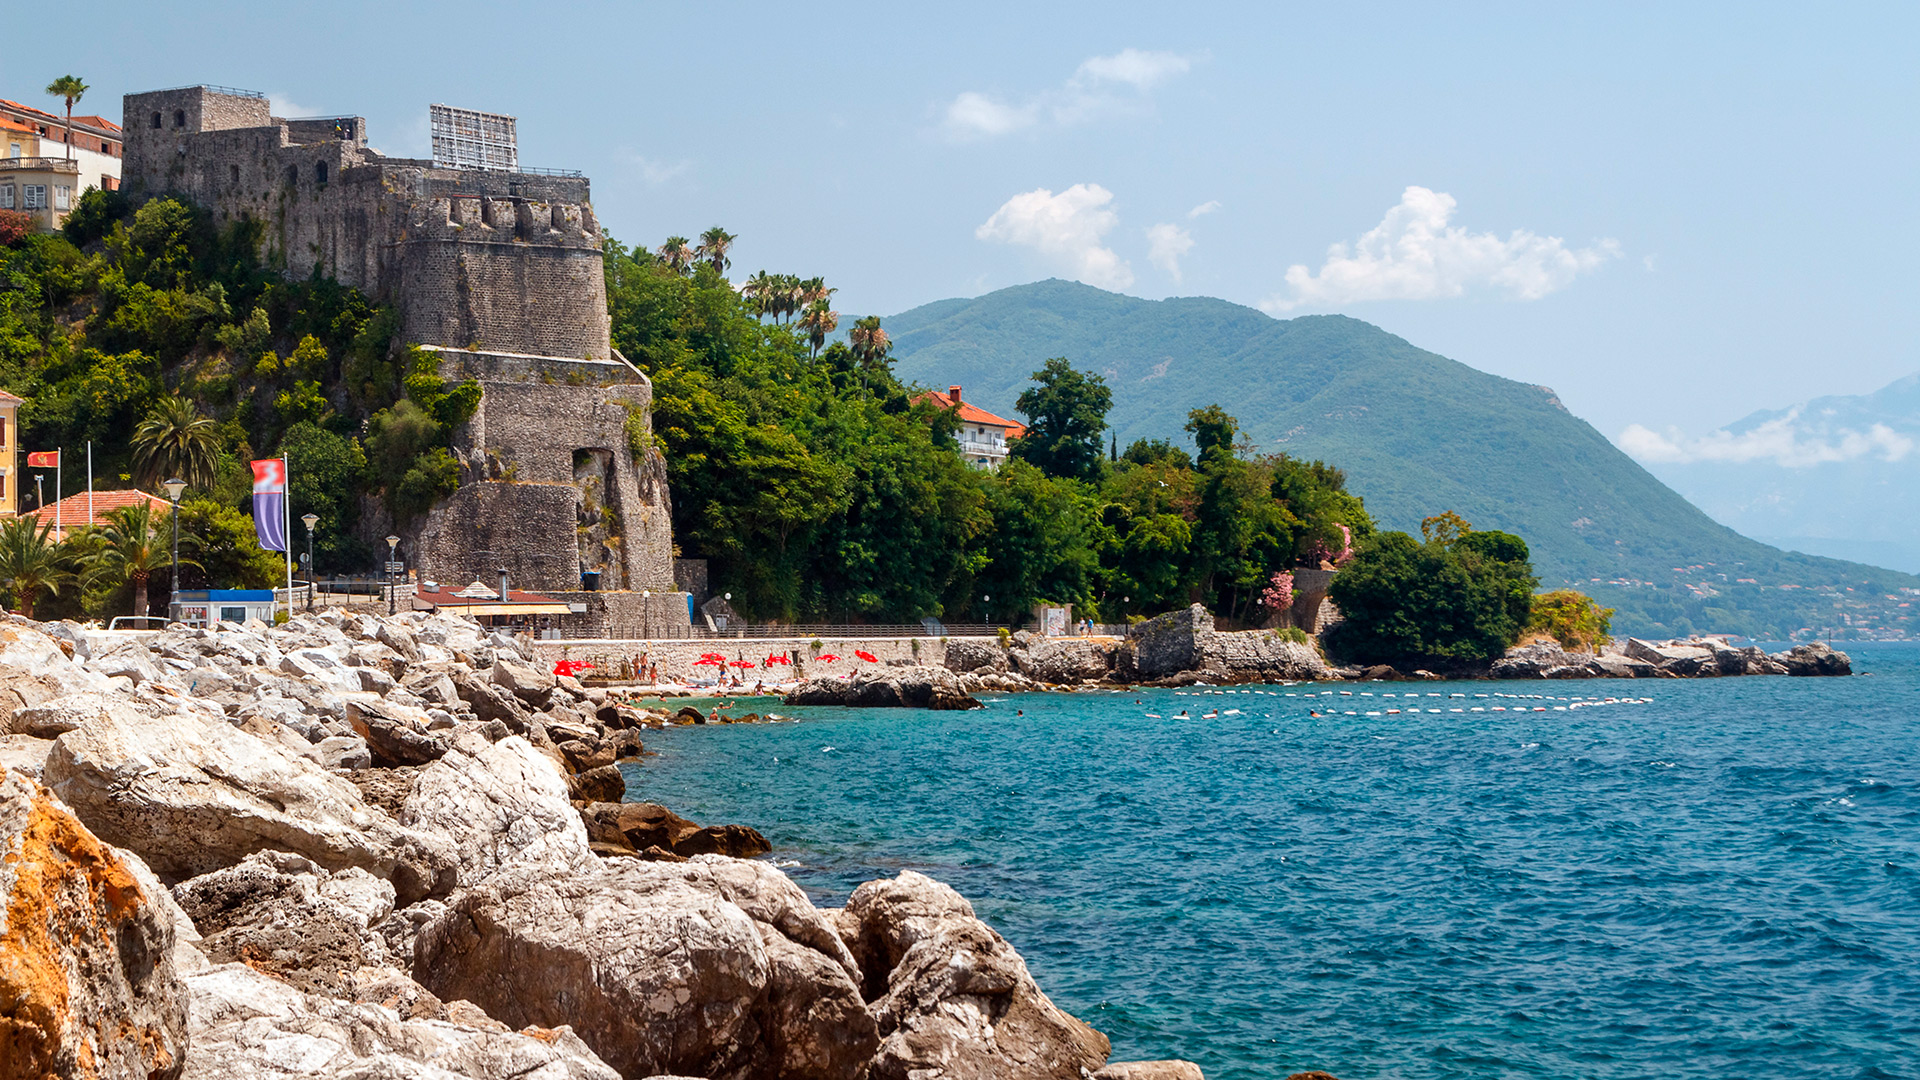 Крепость Forte Mare, Город Herceg Novi, Черногория - маршруты SimpleSail по Адриатике